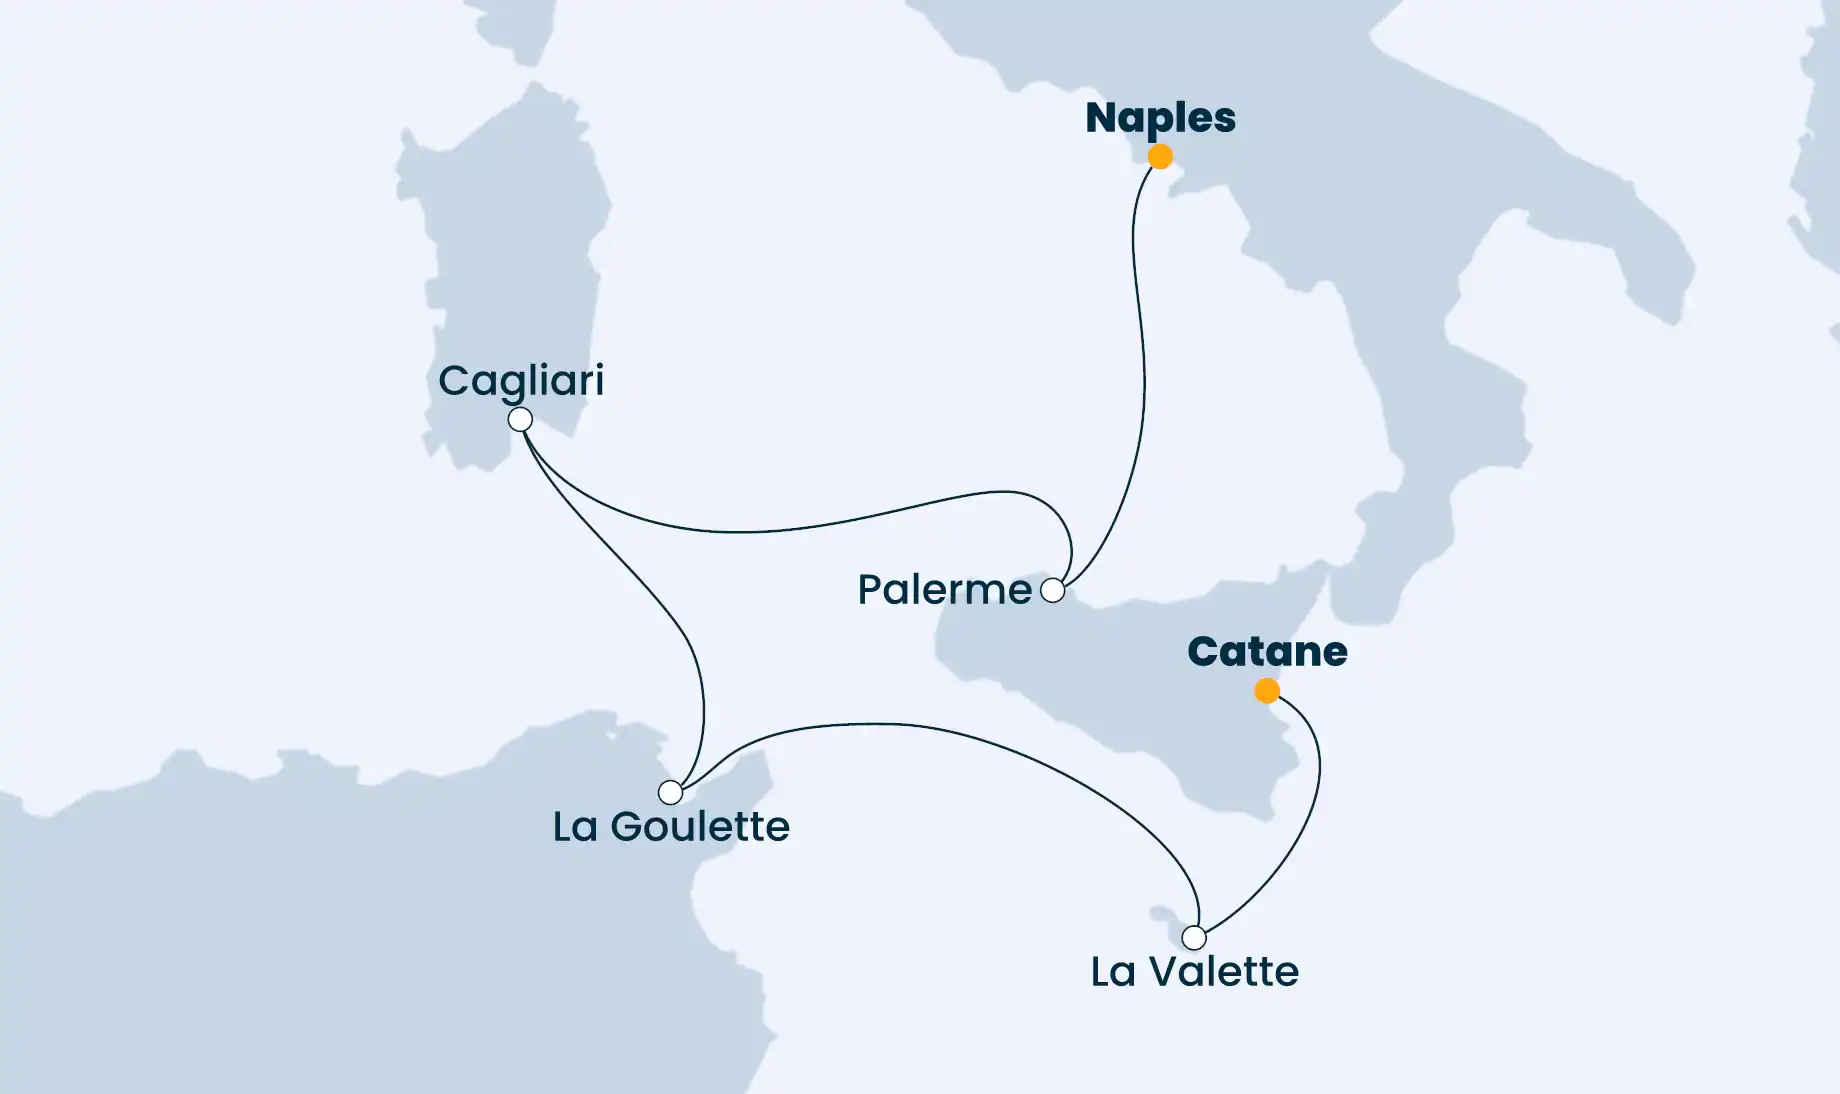 Naples - Catane